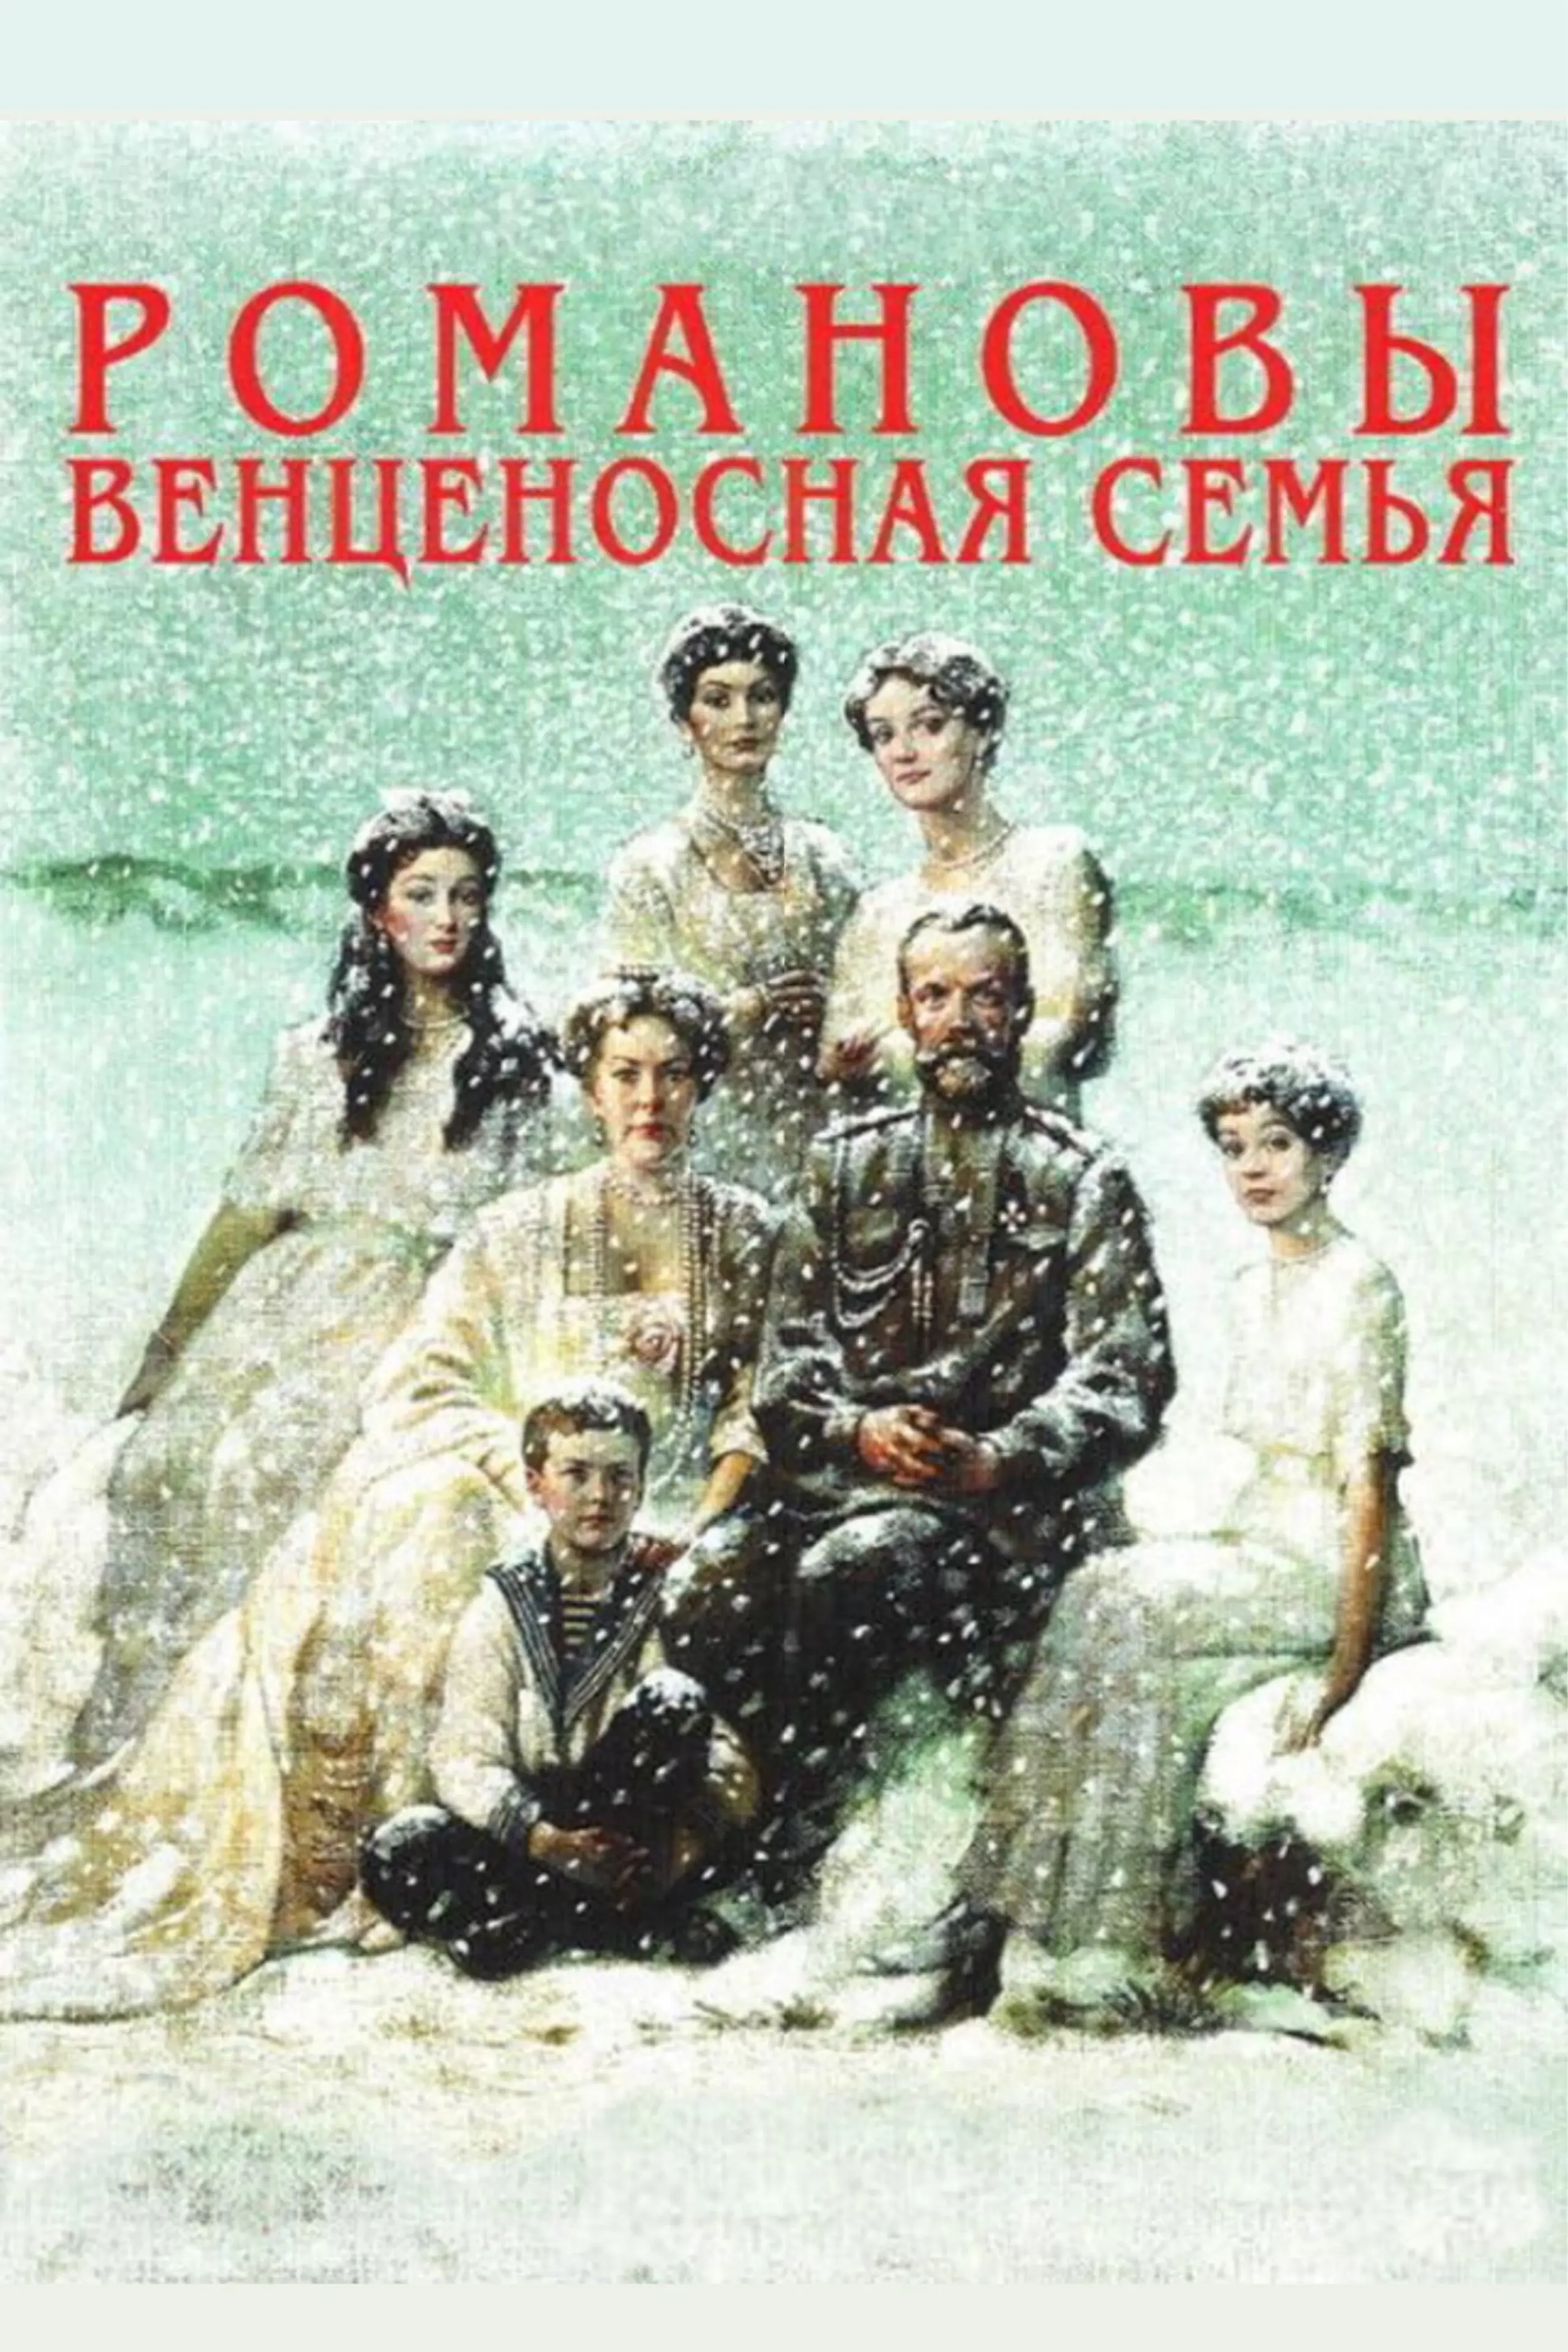 Die Romanows: Eine gekrönte Familie